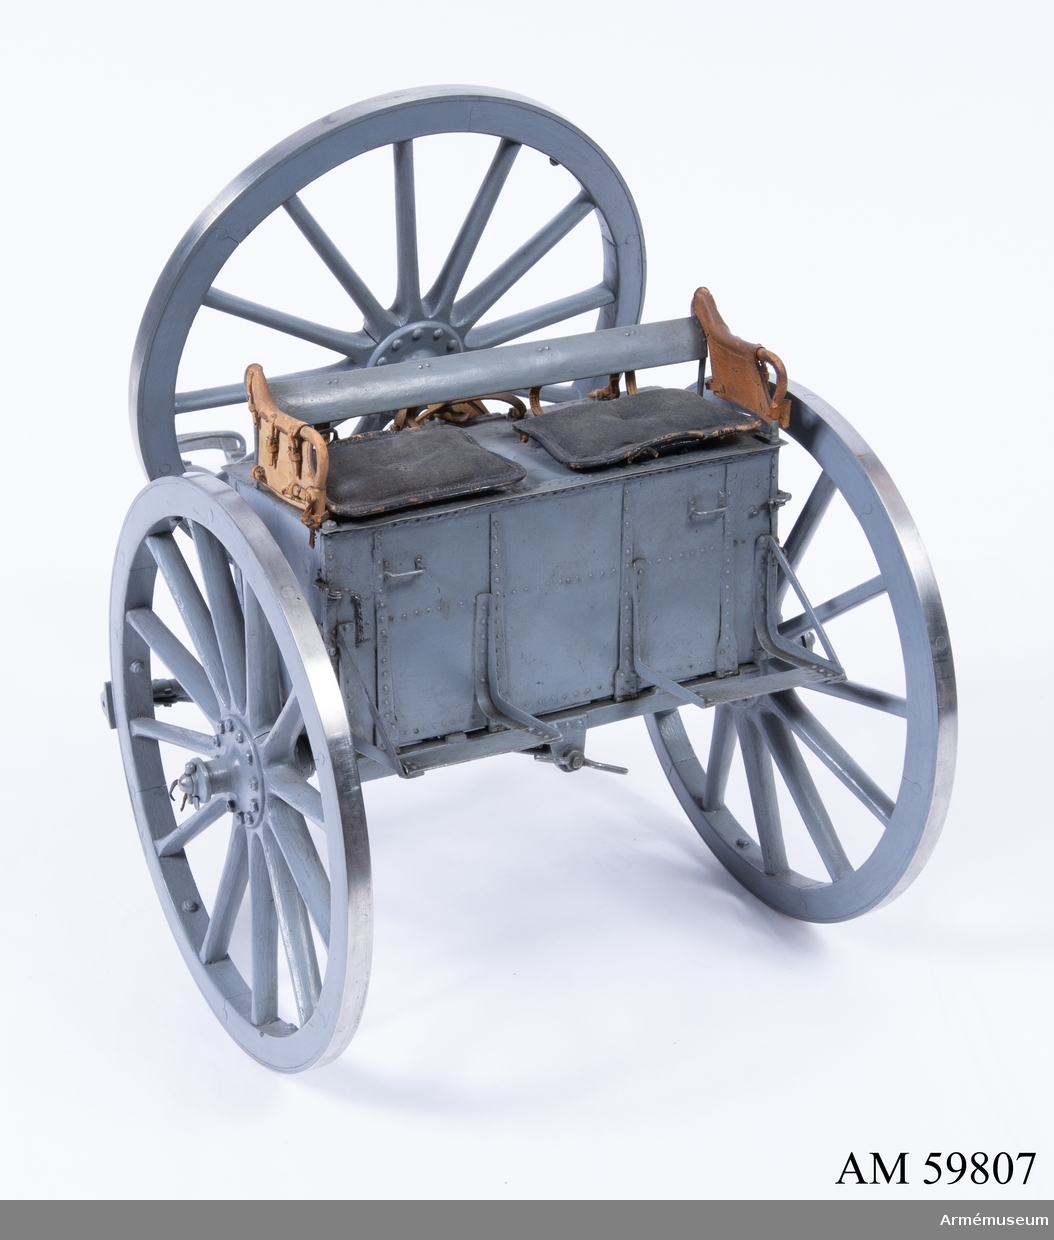 Grupp F I.
Skala 1/8.
Tillverkad enligt Arméförvaltningens artilleridepartement, skr 4/2 1891.
Med reservhjul.